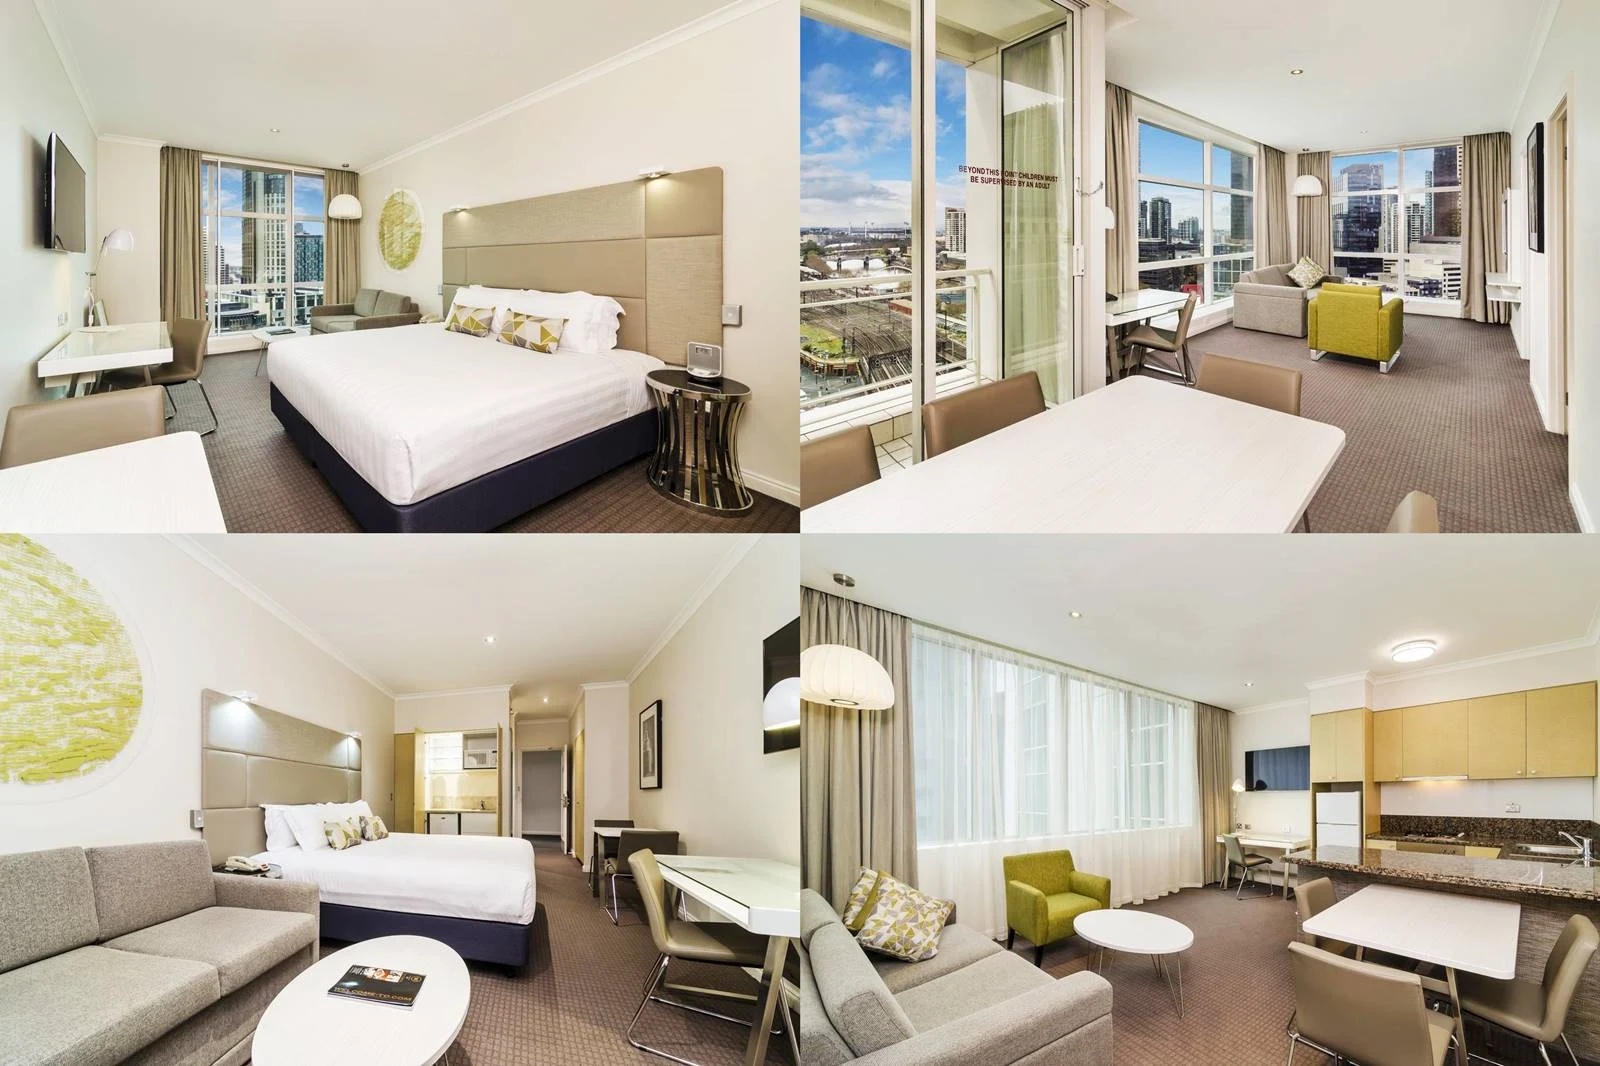 墨爾本-住宿-推薦-墨爾本飯店-墨爾本酒店-墨爾本公寓-墨爾本民宿-墨爾本旅館-墨爾本酒店-必住-Melbourne-Hotel-克萊倫套房酒店-Clarion Suites Gateway